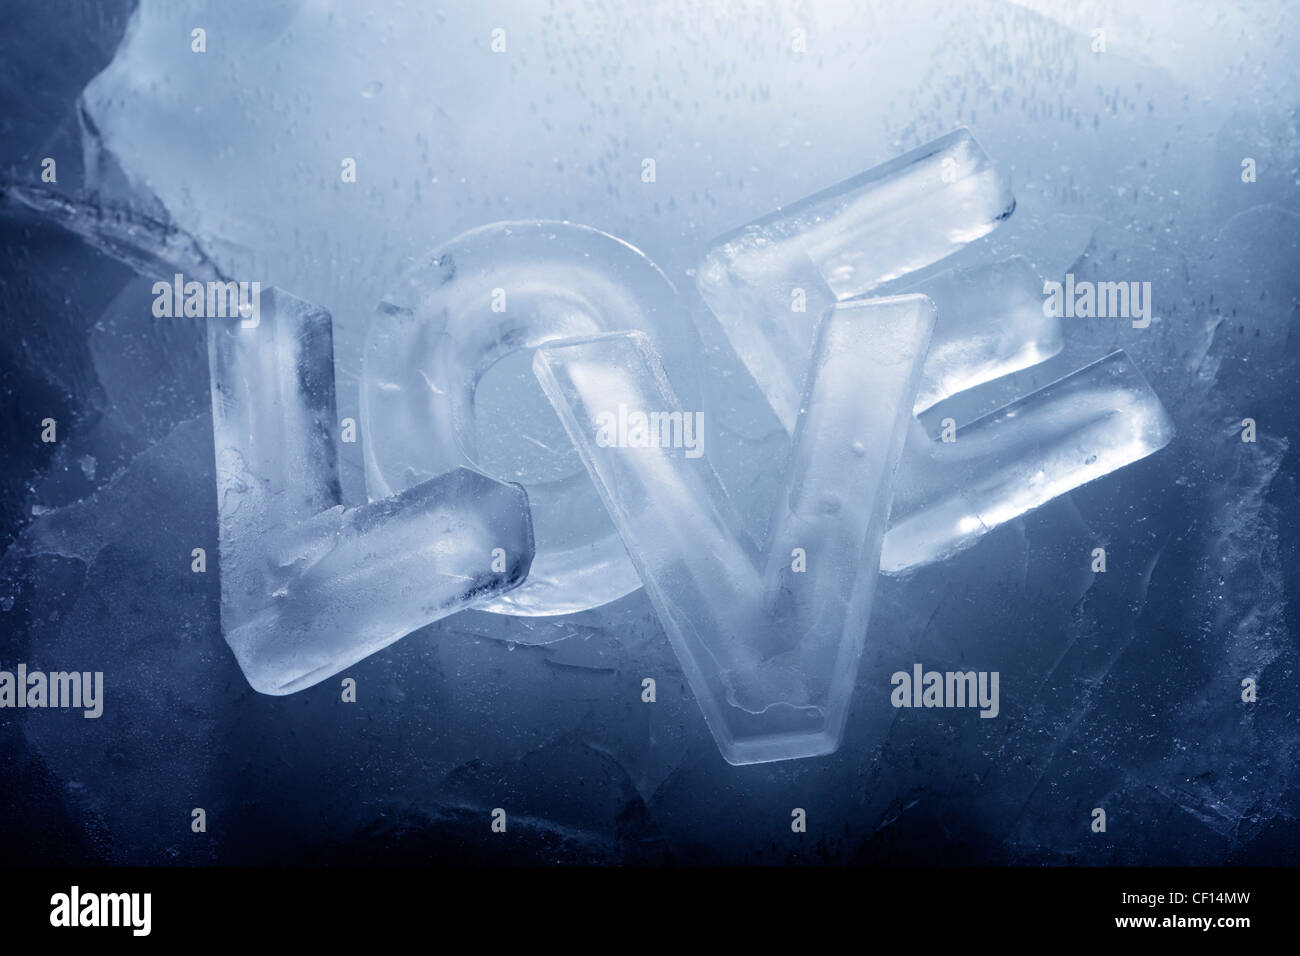 Wort "Love" mit Buchstaben von echtem Eis geschrieben. Stockfoto